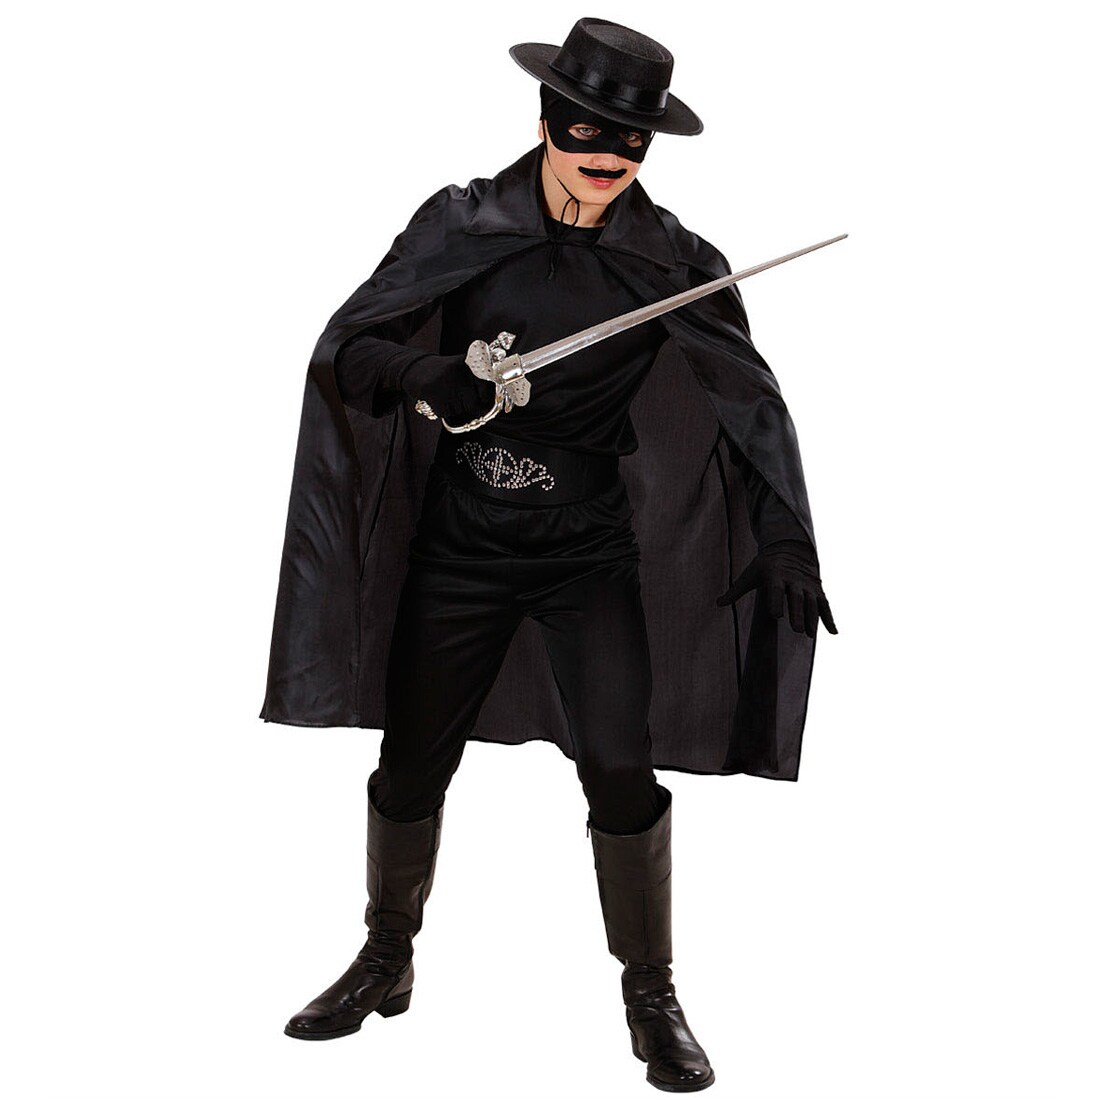 Kinder Zorro Cape Batman Umhang schwarz Vampir Kostüm Halloween Vampirumhang 